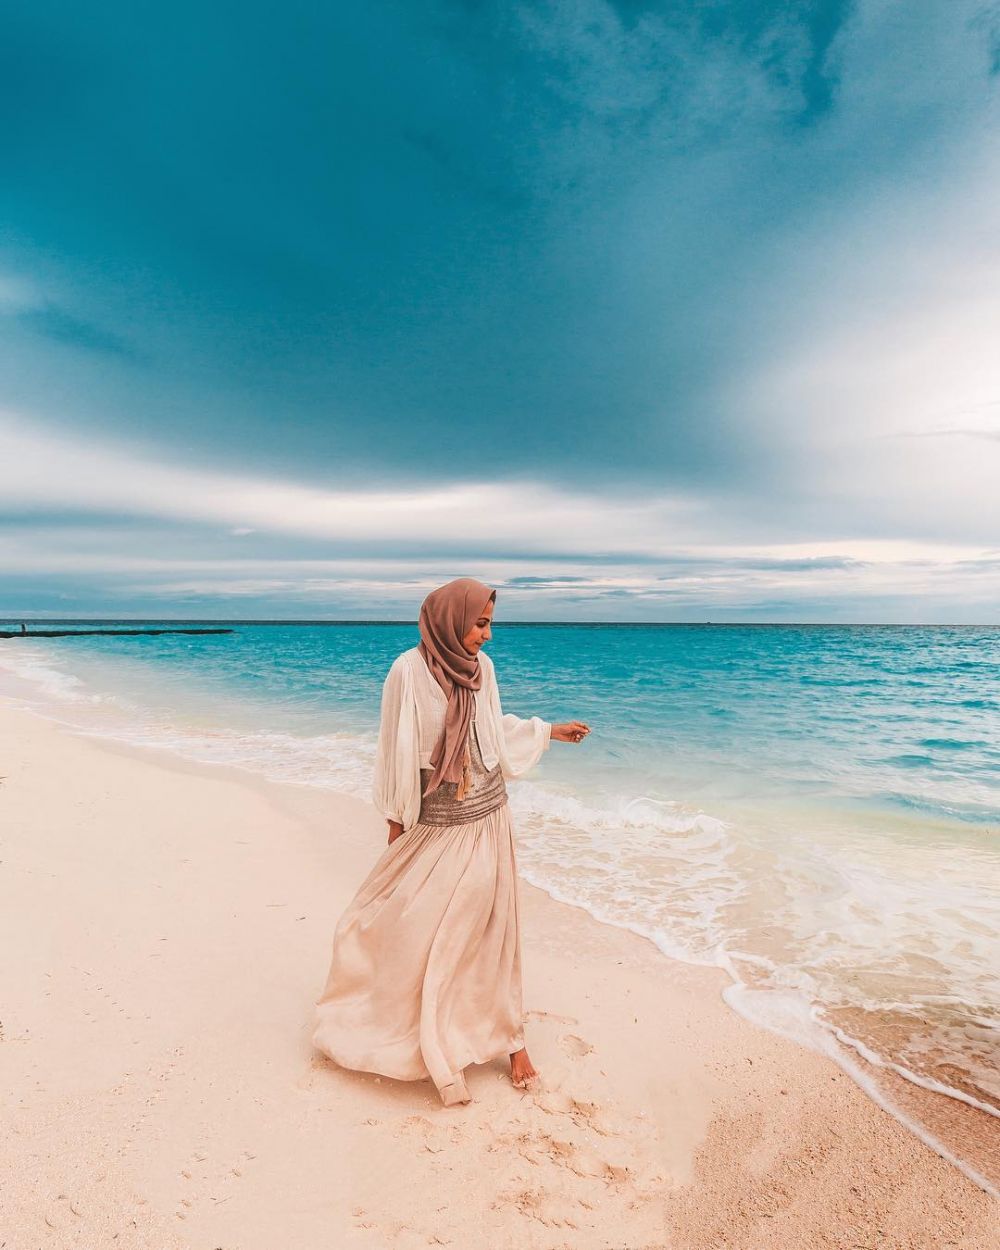 Gambar Wanita Muslimah Duduk Di Tepi Pantai Rahman Gambar